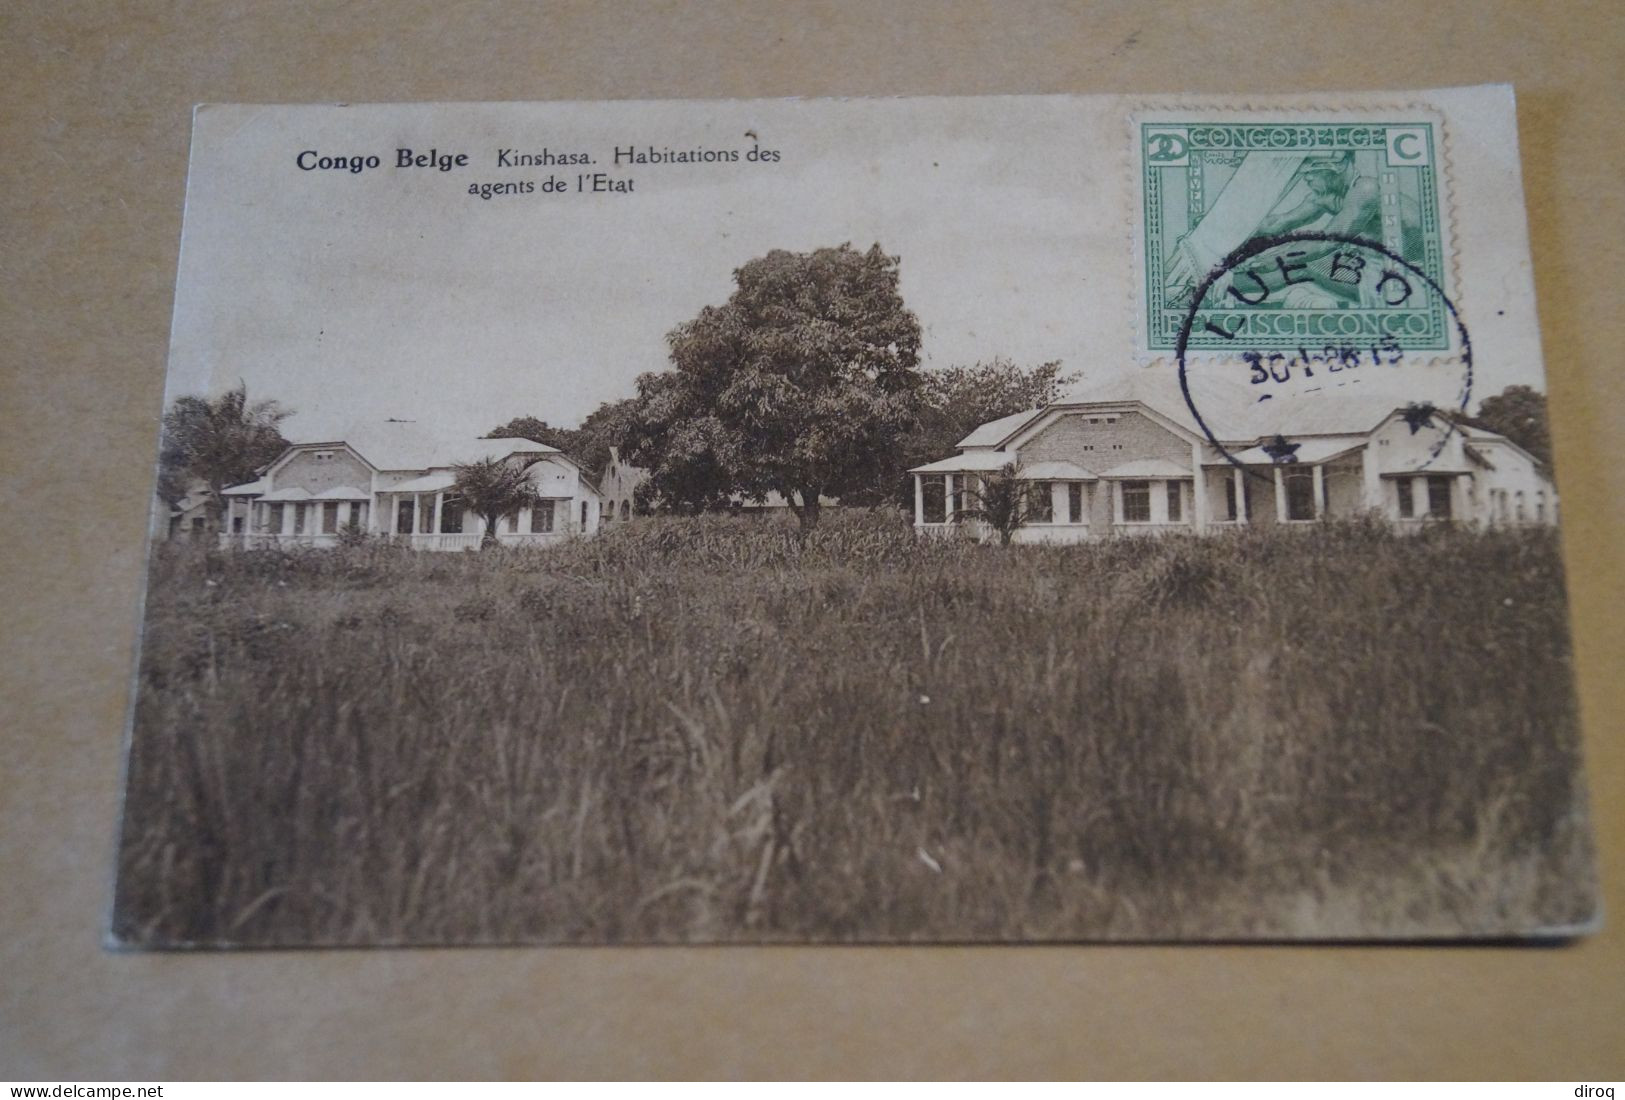 Congo Belge,Kinshasa,oblitération De Luebo,Très Belle Ancienne Carte,à Voyagé,pour Collection - Belgian Congo